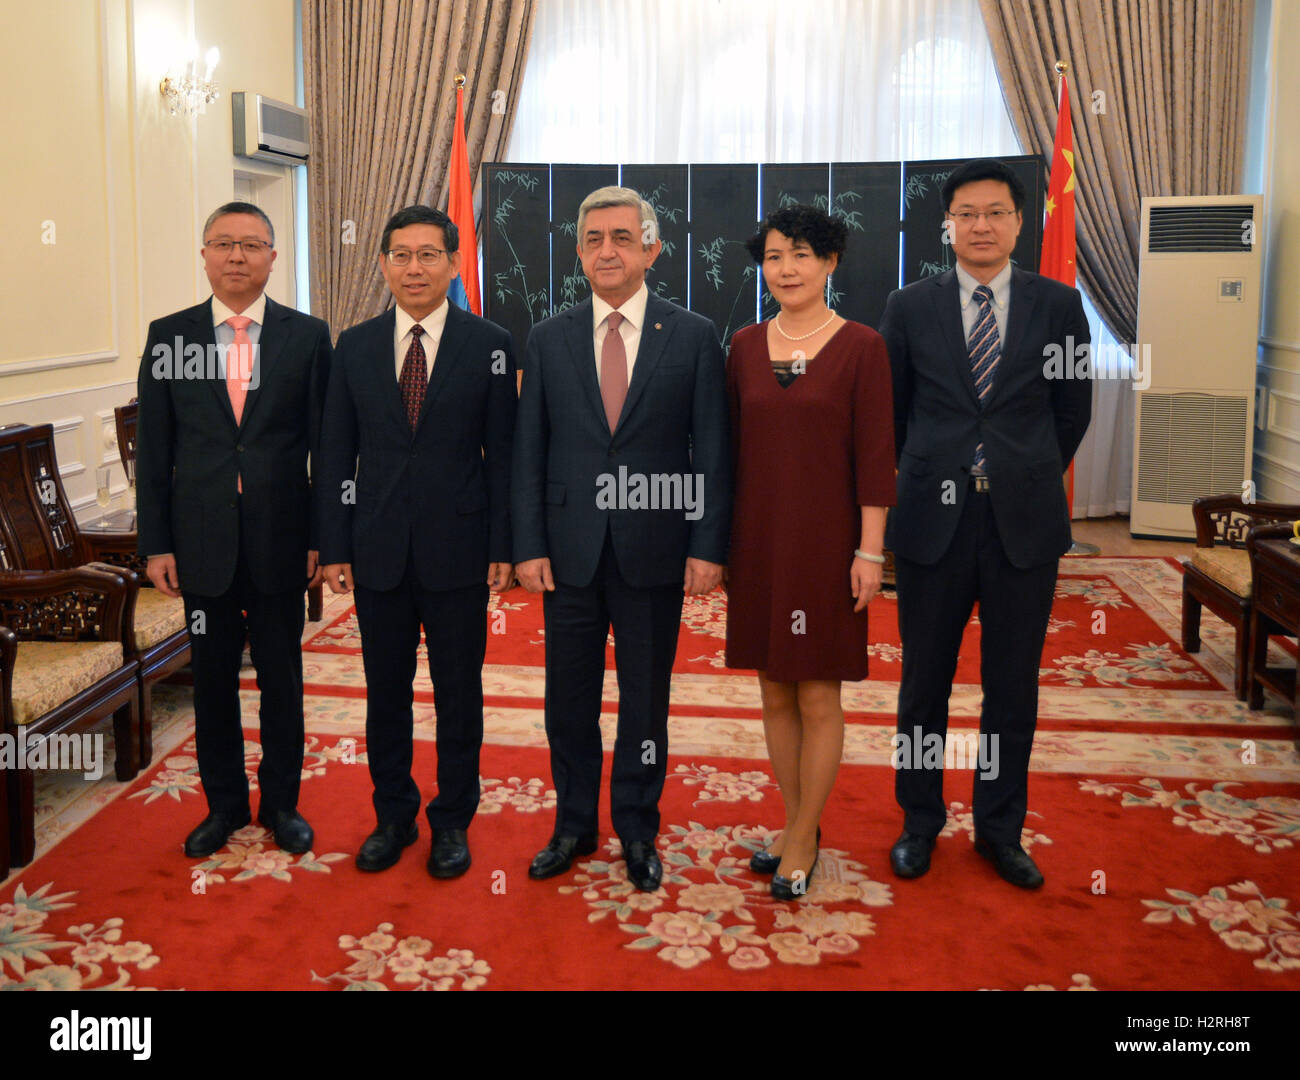 (161001)--Jerewan, 1. Oktober 2016 (Xinhua)--Armenian President Serzh Sarkisyan (C) posiert für Fotos mit Mitarbeitern der chinesischen Botschaft in Eriwan, Armenien, 1. Oktober 2016. Armenische Präsident Serzh Sarkisyan besucht die chinesische Botschaft in Eriwan, den 67. Jahrestag der Gründung der Volksrepublik China am Samstag zu feiern. (Xinhua) (cl) Stockfoto